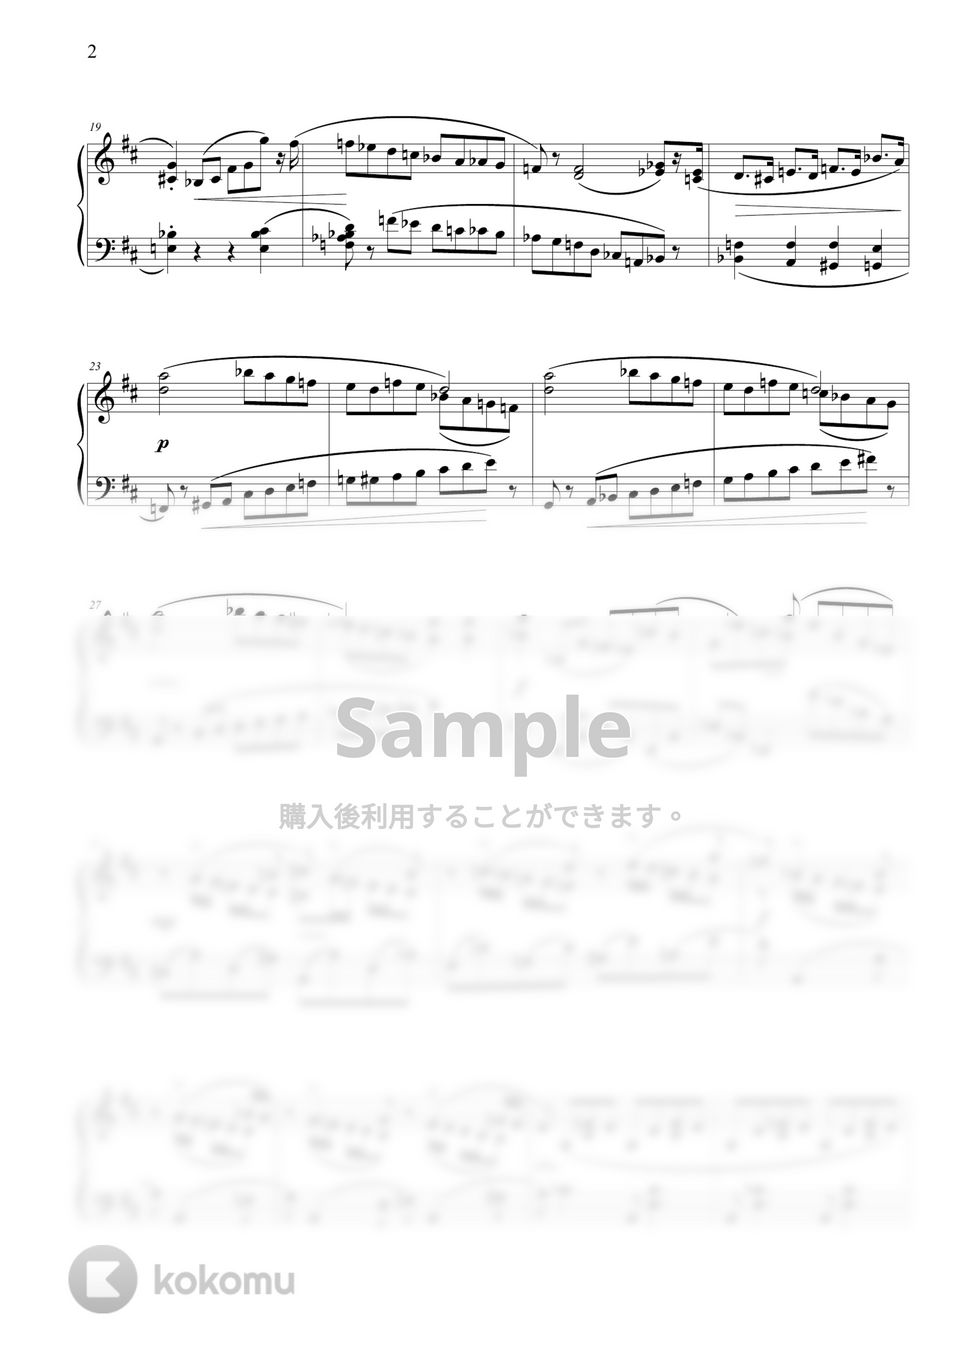 ショパン(F. Chopin) - ピアノ・ソナタ第3番 (中級バージョン) by THIS IS PIANO